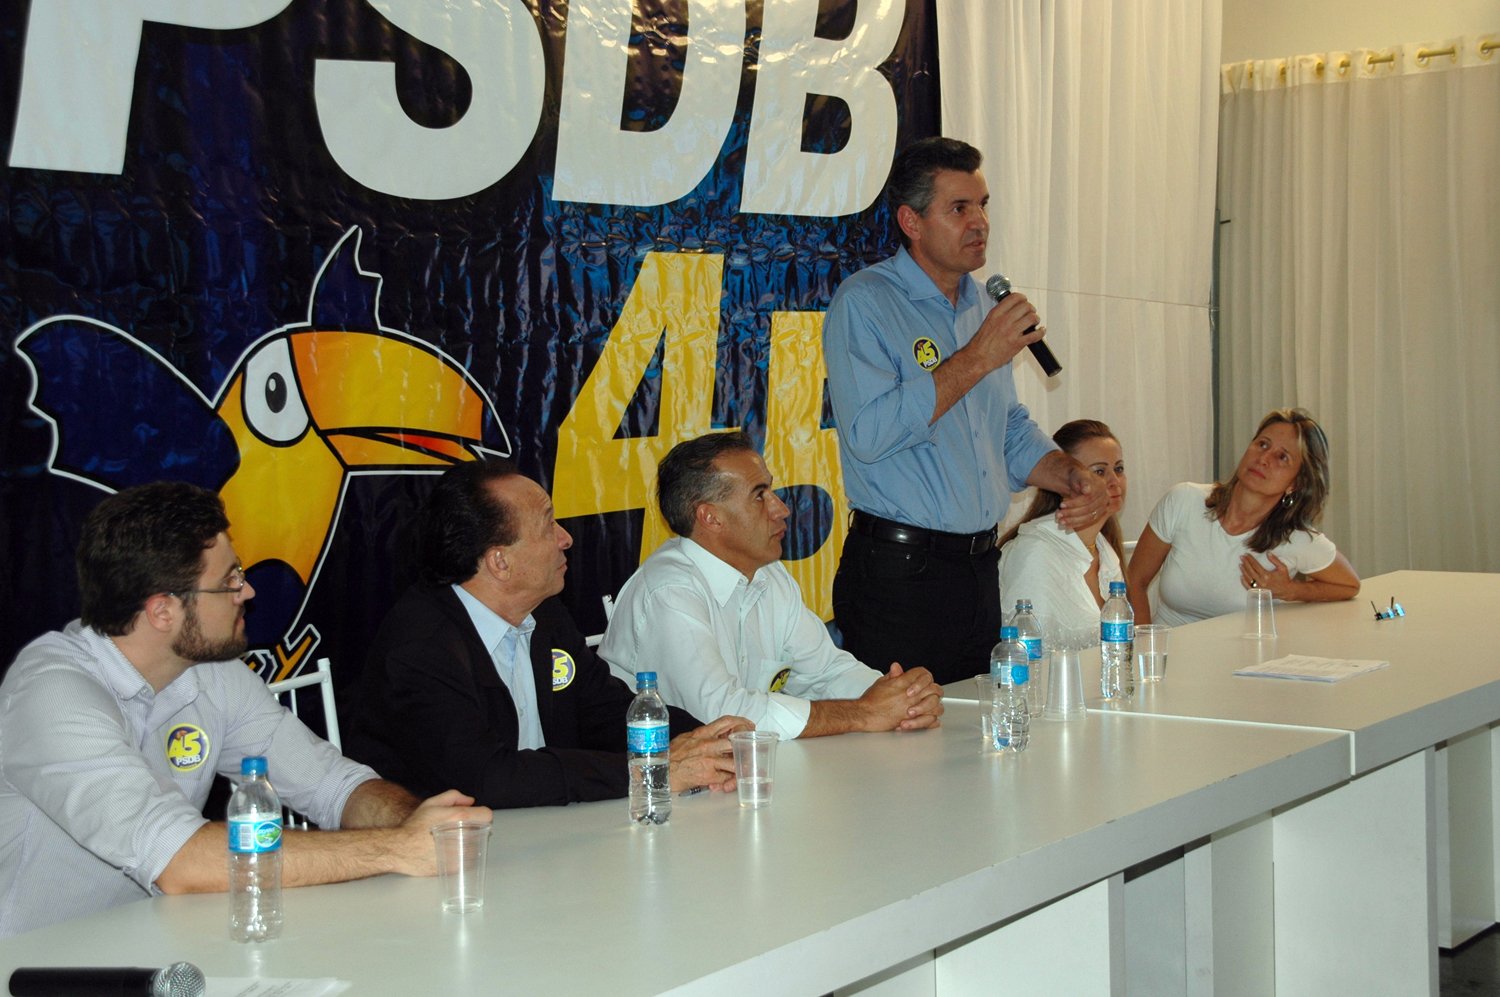 Sérgio do Cristma discursa: “Nós vamos ganhar esta eleição e implantar um novo jeito de se fazer política em Apucarana”